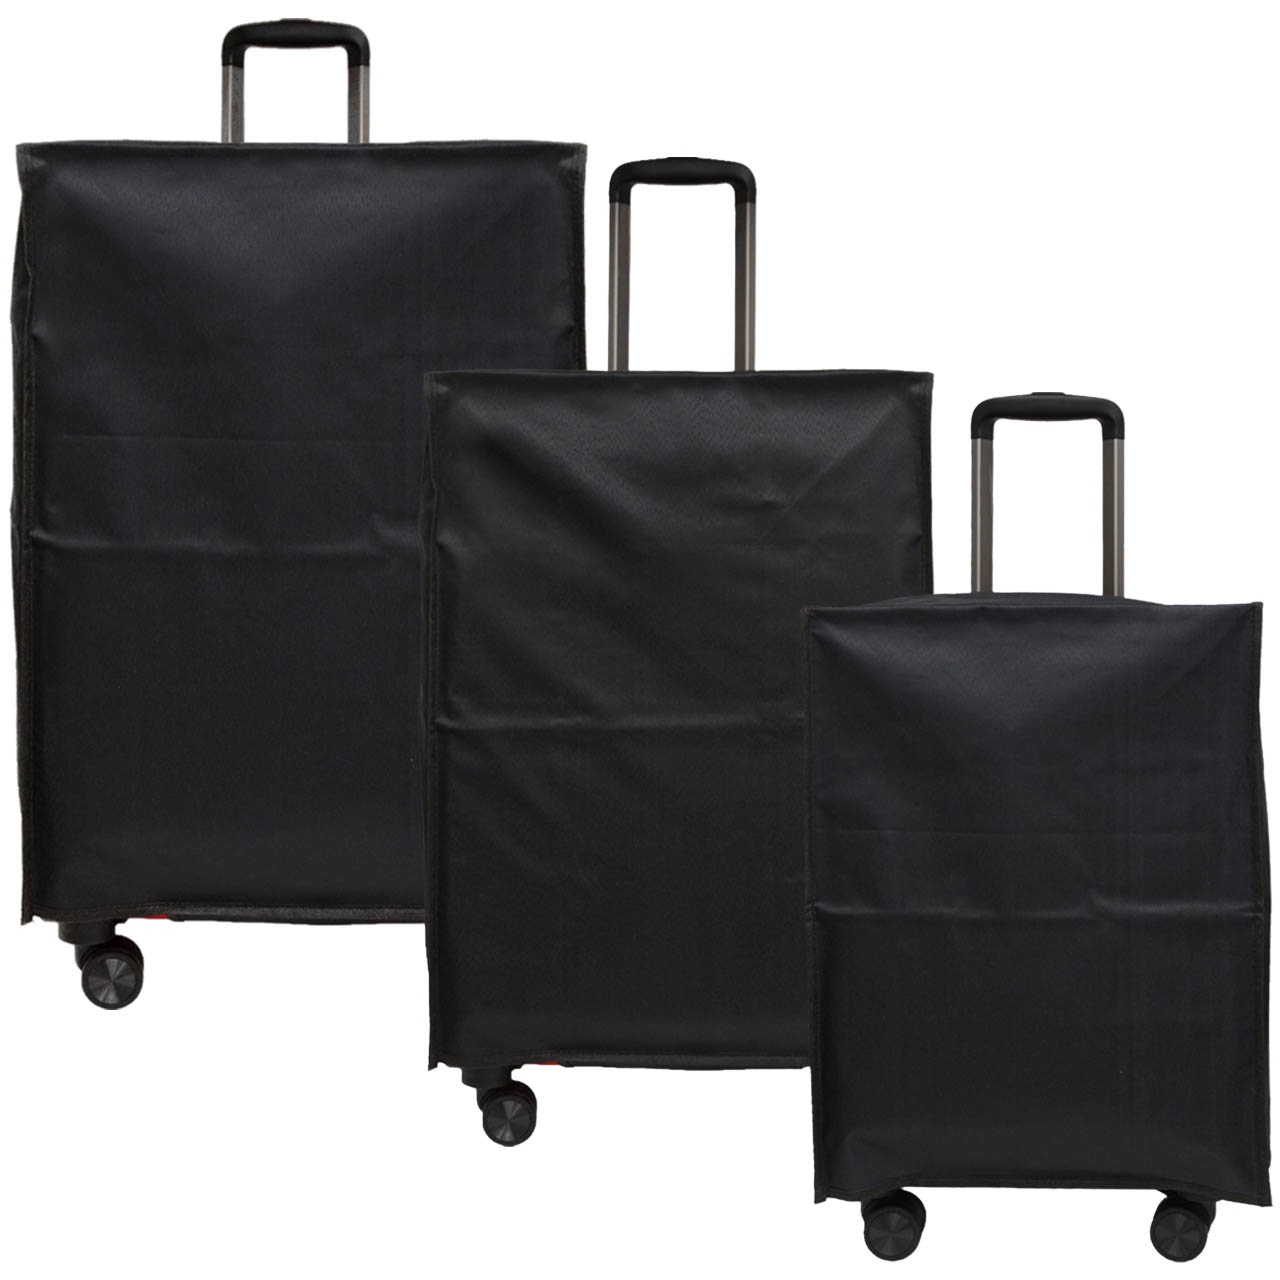 کاور چمدان مدل AK کد 2300002 مجموعه 3 عددی| خرید لوازم سفر